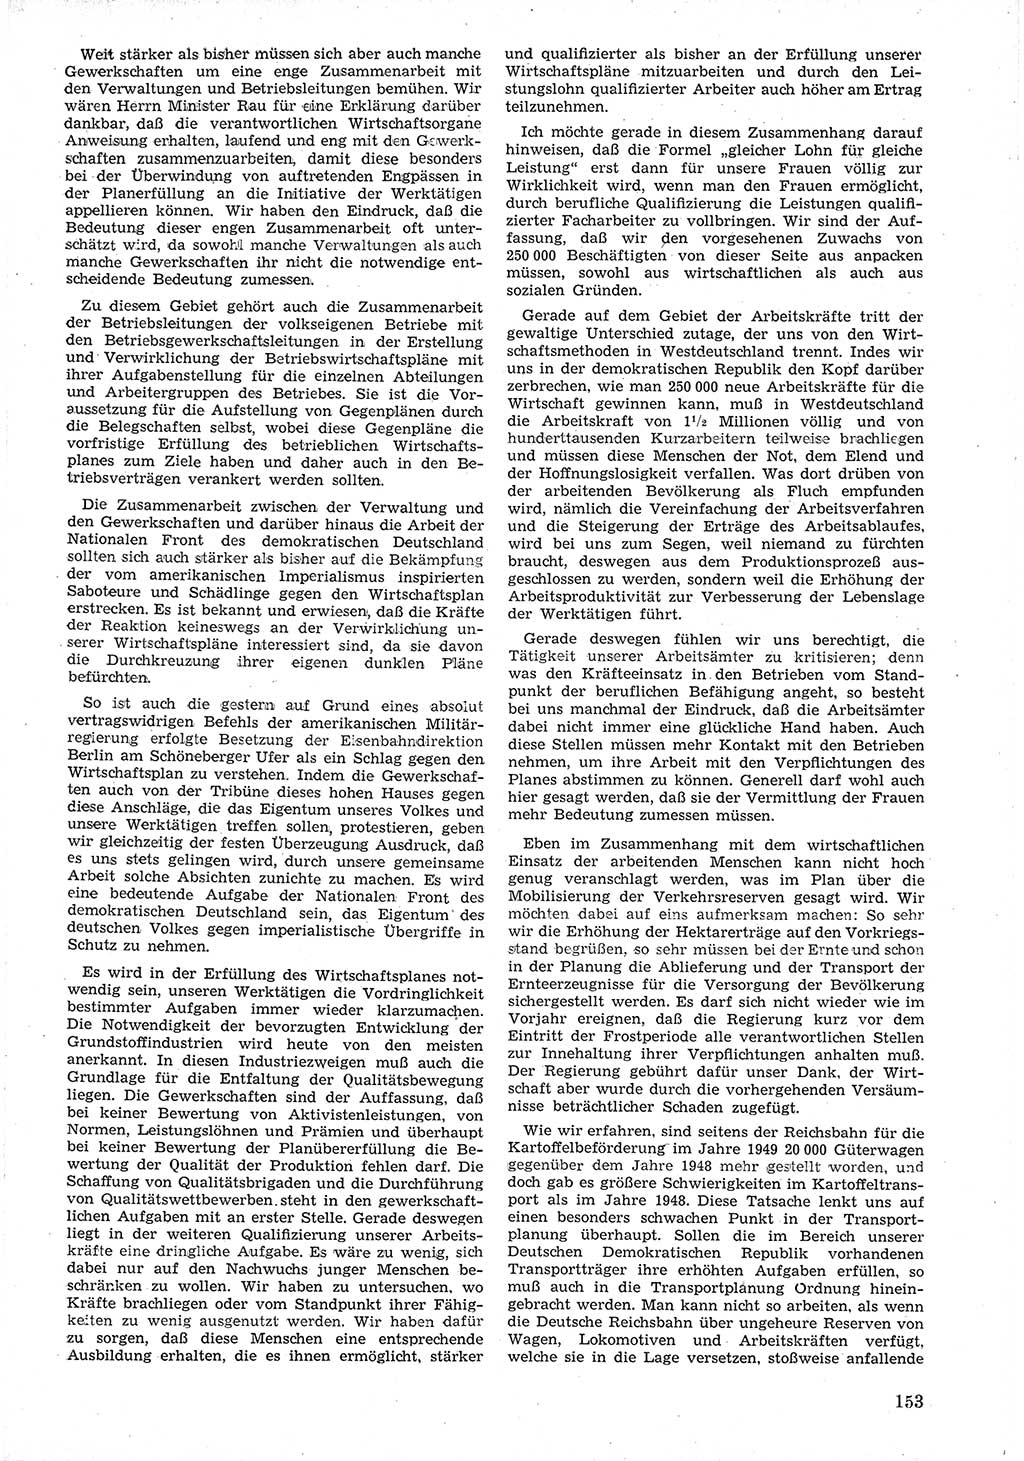 Provisorische Volkskammer (VK) der Deutschen Demokratischen Republik (DDR) 1949-1950, Dokument 165 (Prov. VK DDR 1949-1950, Dok. 165)